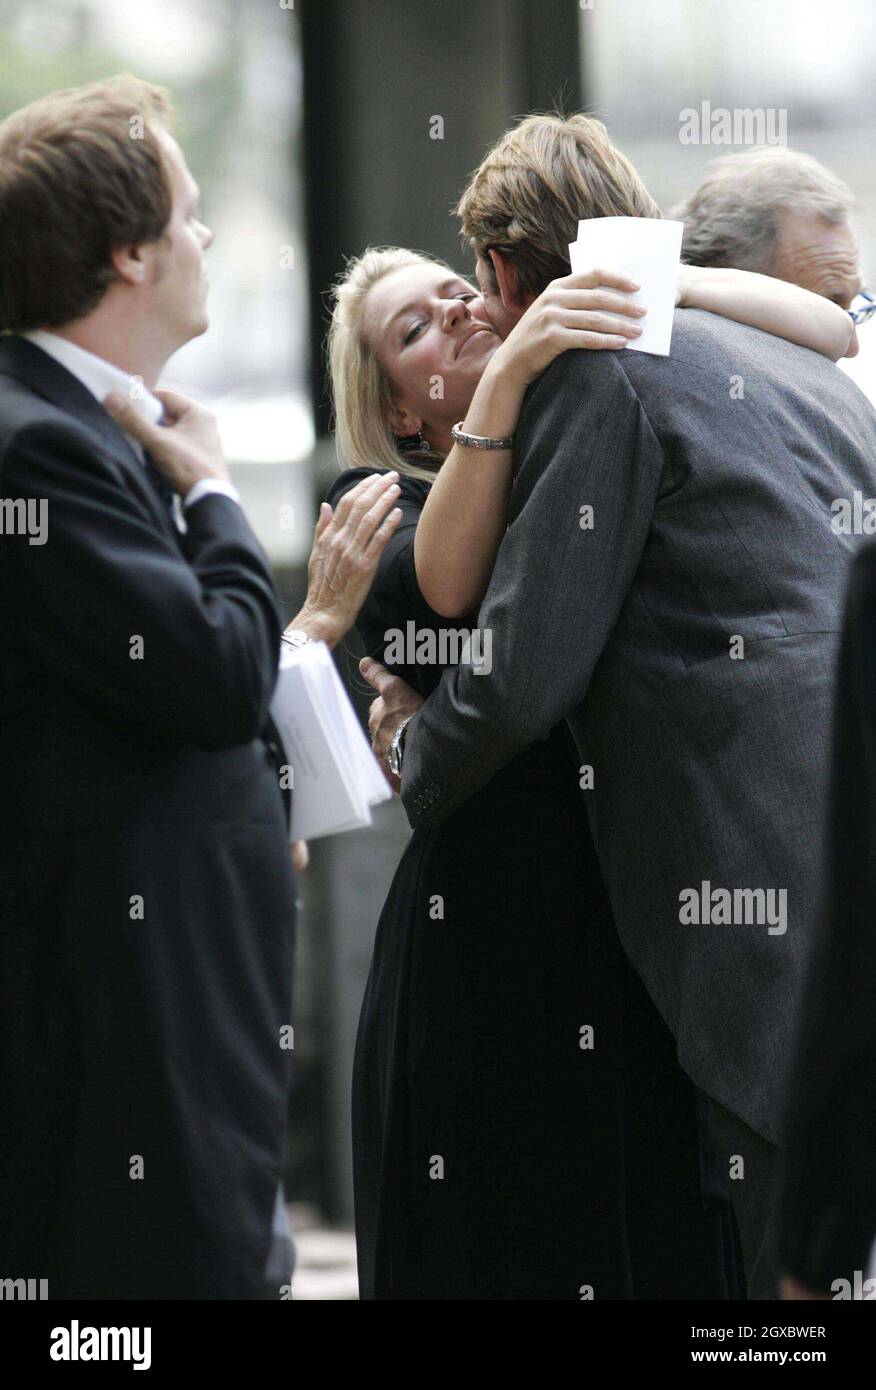 Tom Parker Bowles begrüßt seine Schwester Laura Lopes am 11. September 2006 mit einem Kuss in der St. Paul's Church in Knightsbridge, London, zu einem Gedenkgottesdienst für ihren Großvater Major Bruce Shand. Anwar Hussein/EMPICS Entertainment Stockfoto